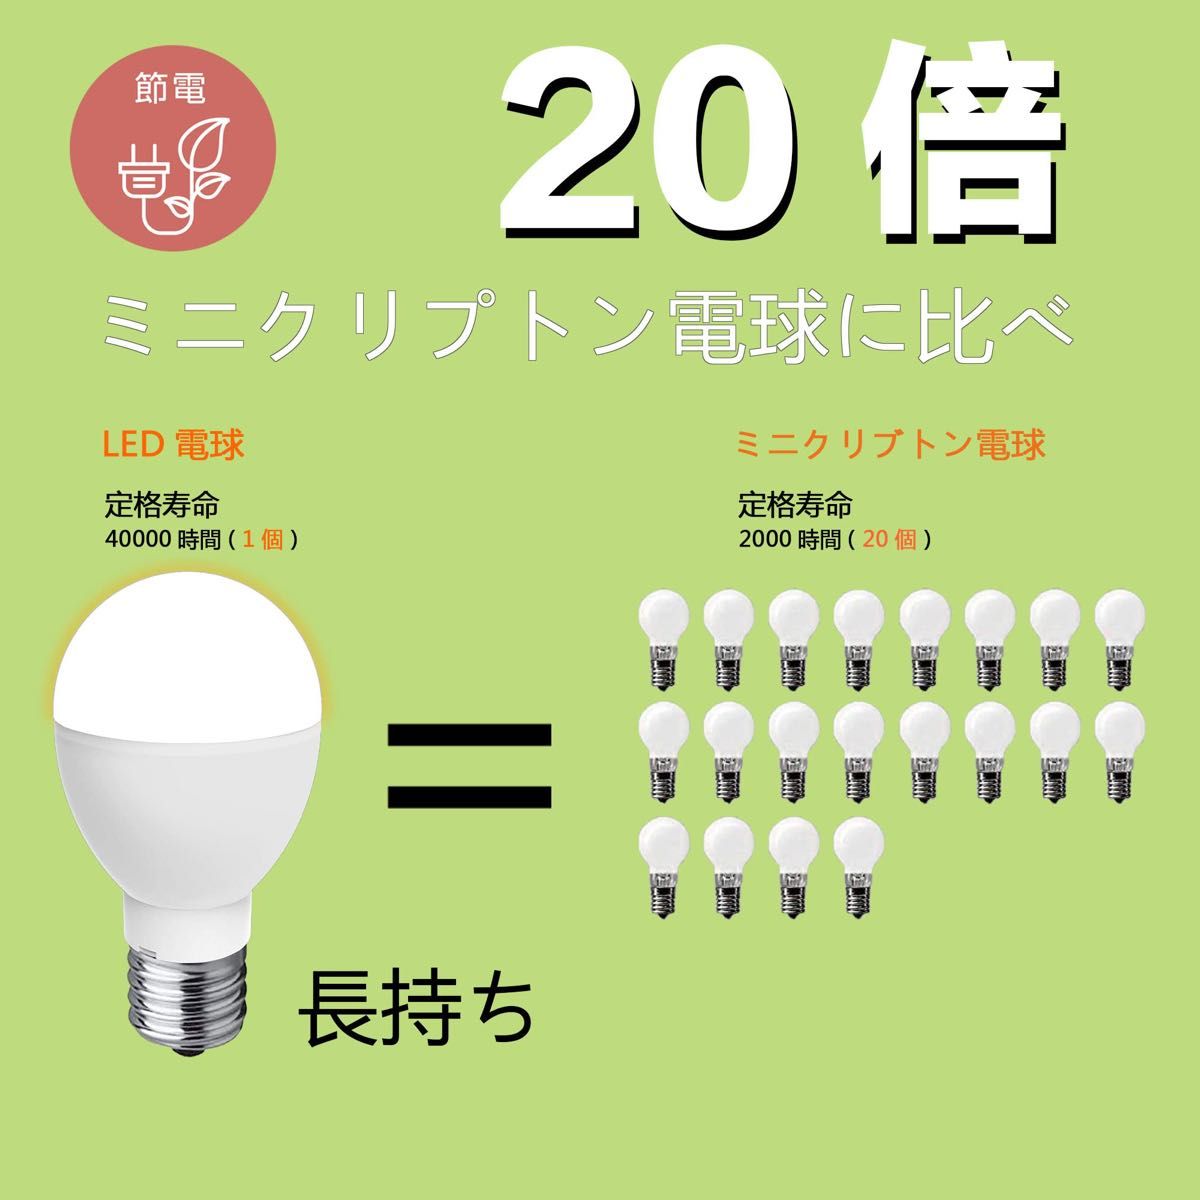 【現品限り】【早い者勝ち】LED電球 E17 昼白色 5Wミニクリプトン型 760lm 高輝度 広配光タイプ 6個セット